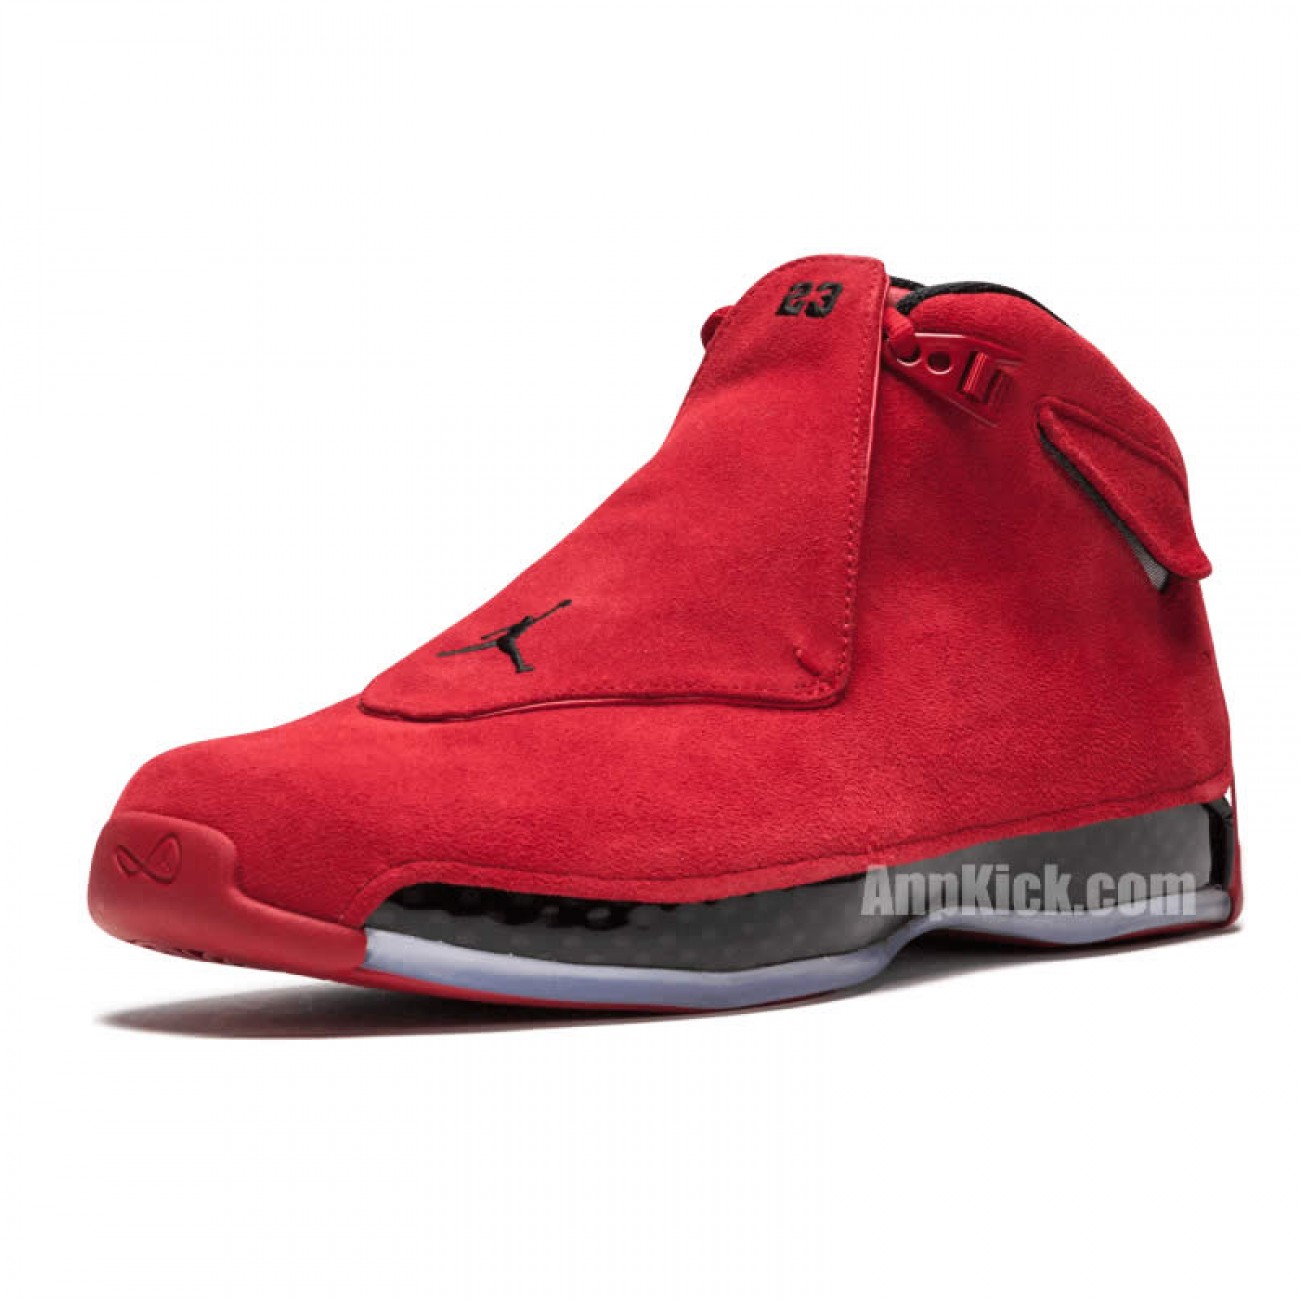 Air Jordan 18 Toro "Gym Red" Suede AA2494-601 Release Date 2018